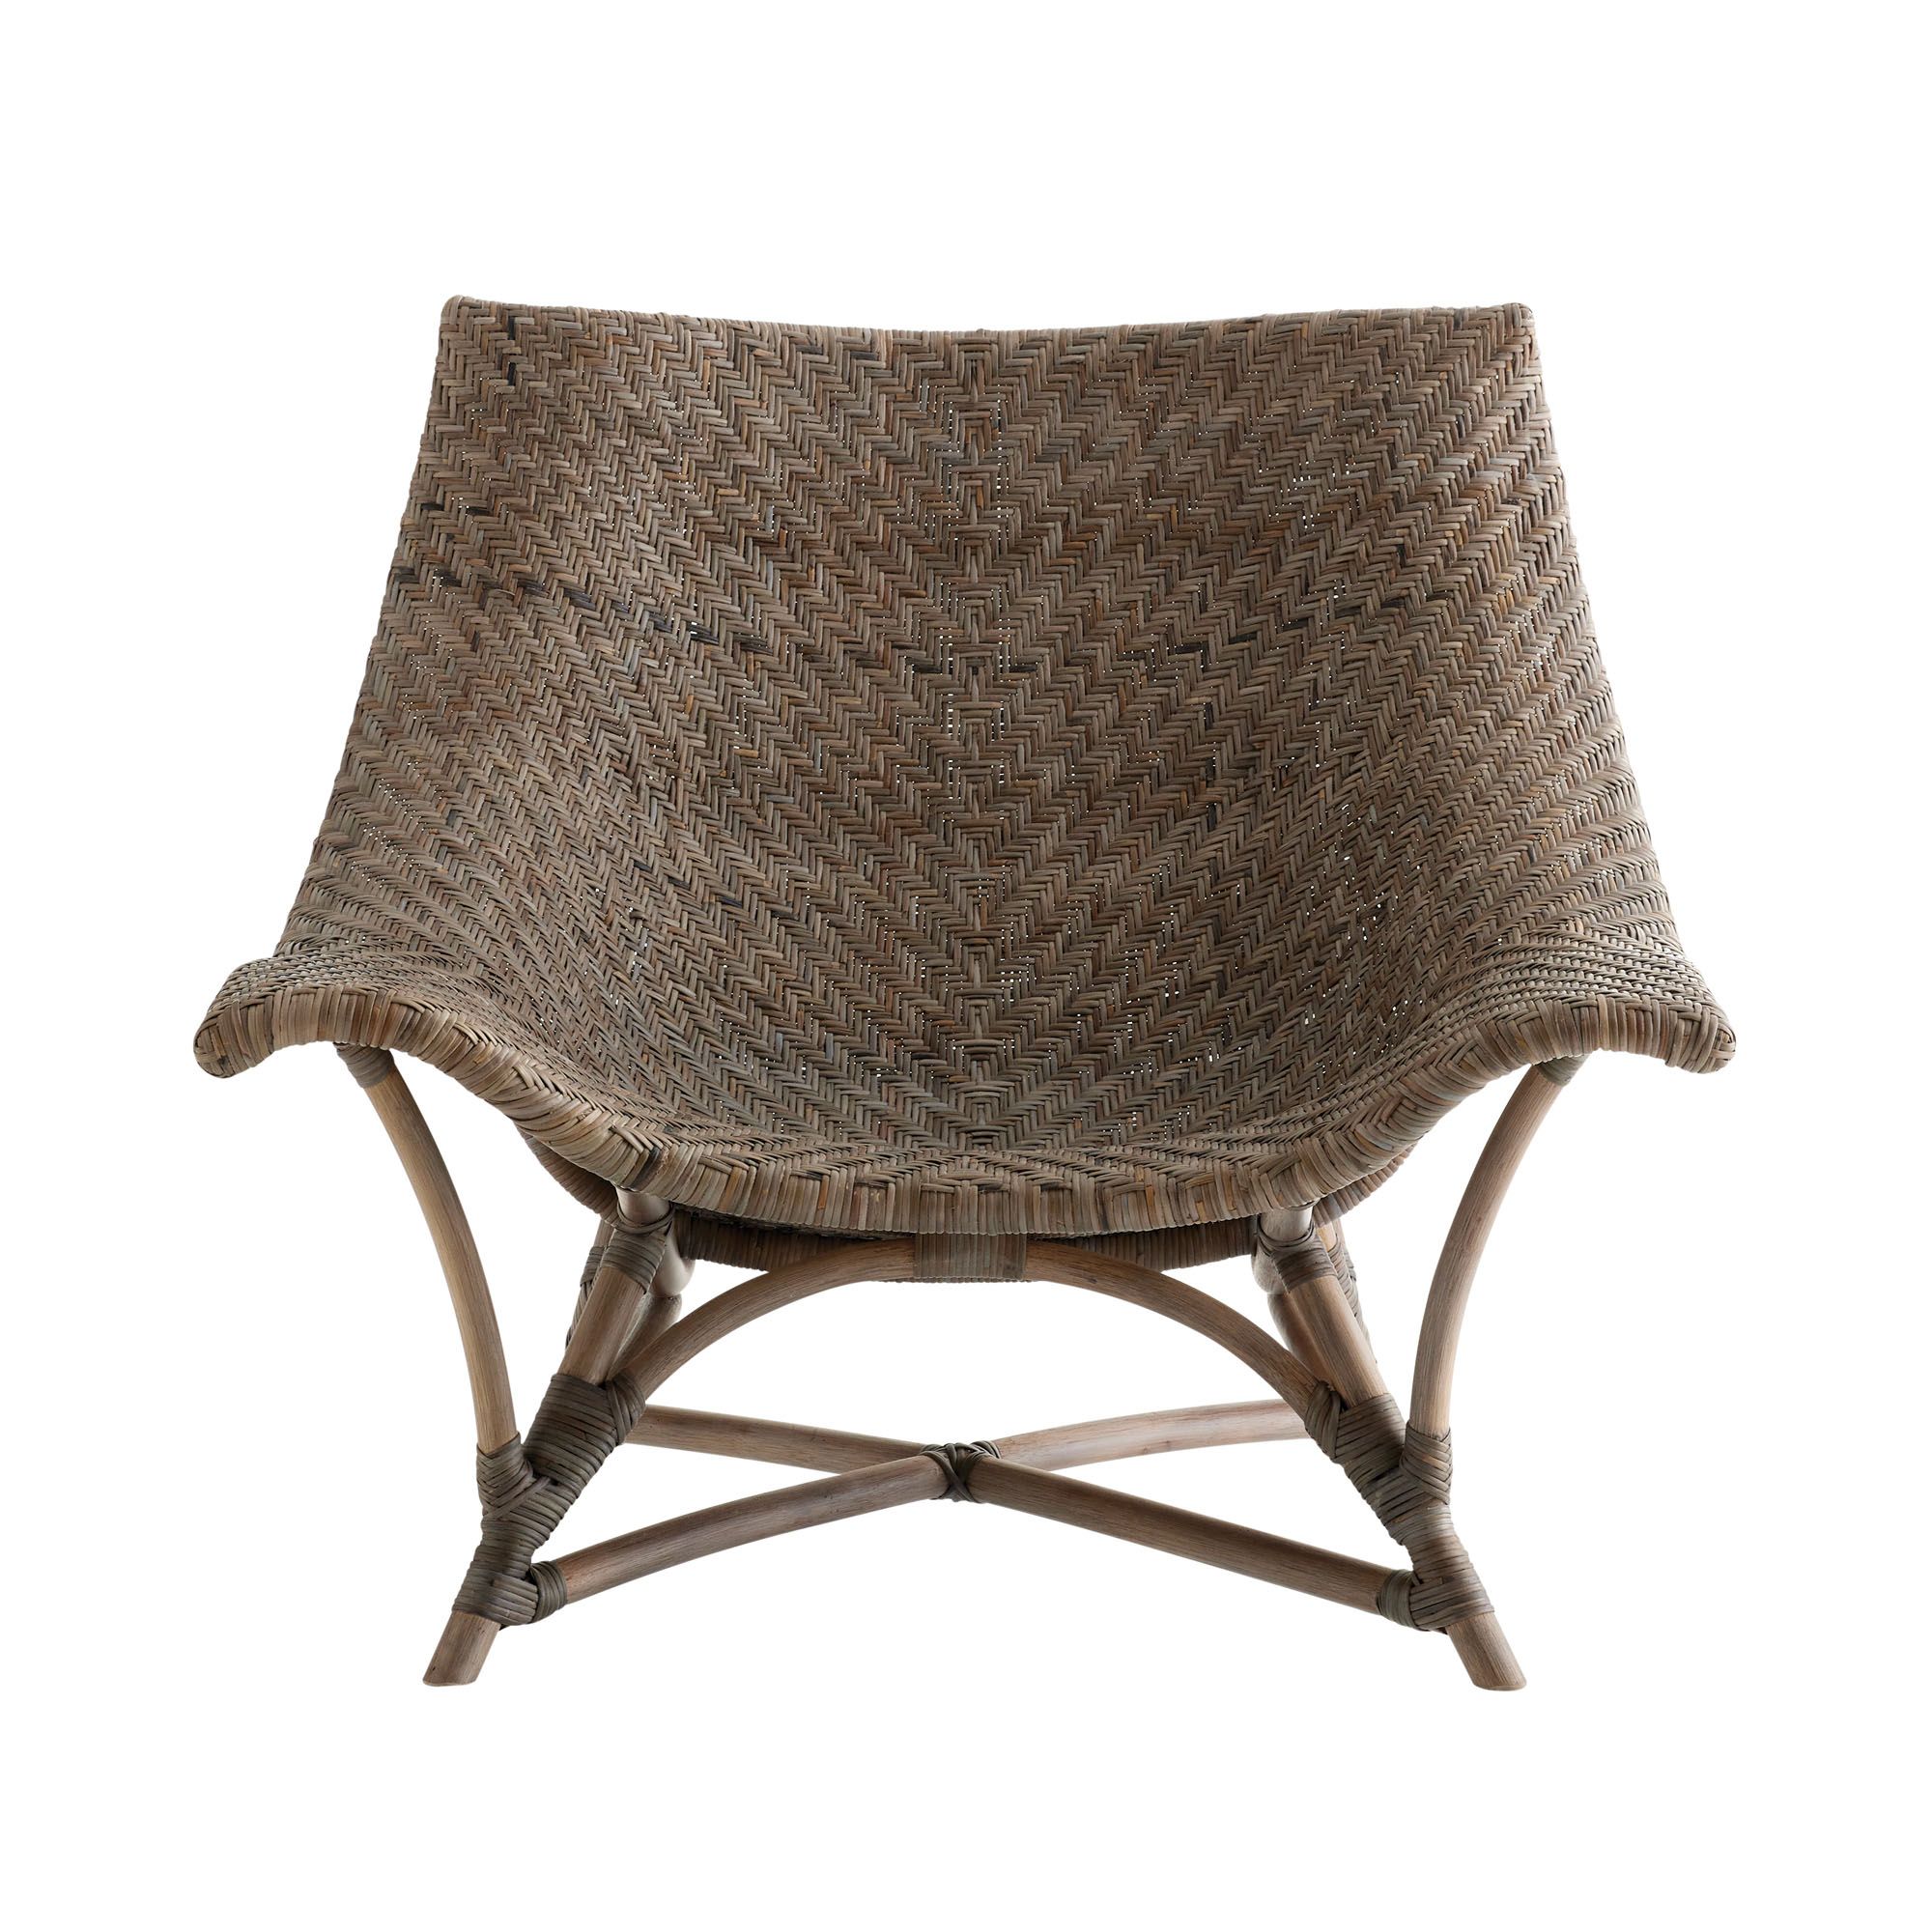 Купить Кресло Margot Lounge Chair в интернет-магазине roooms.ru